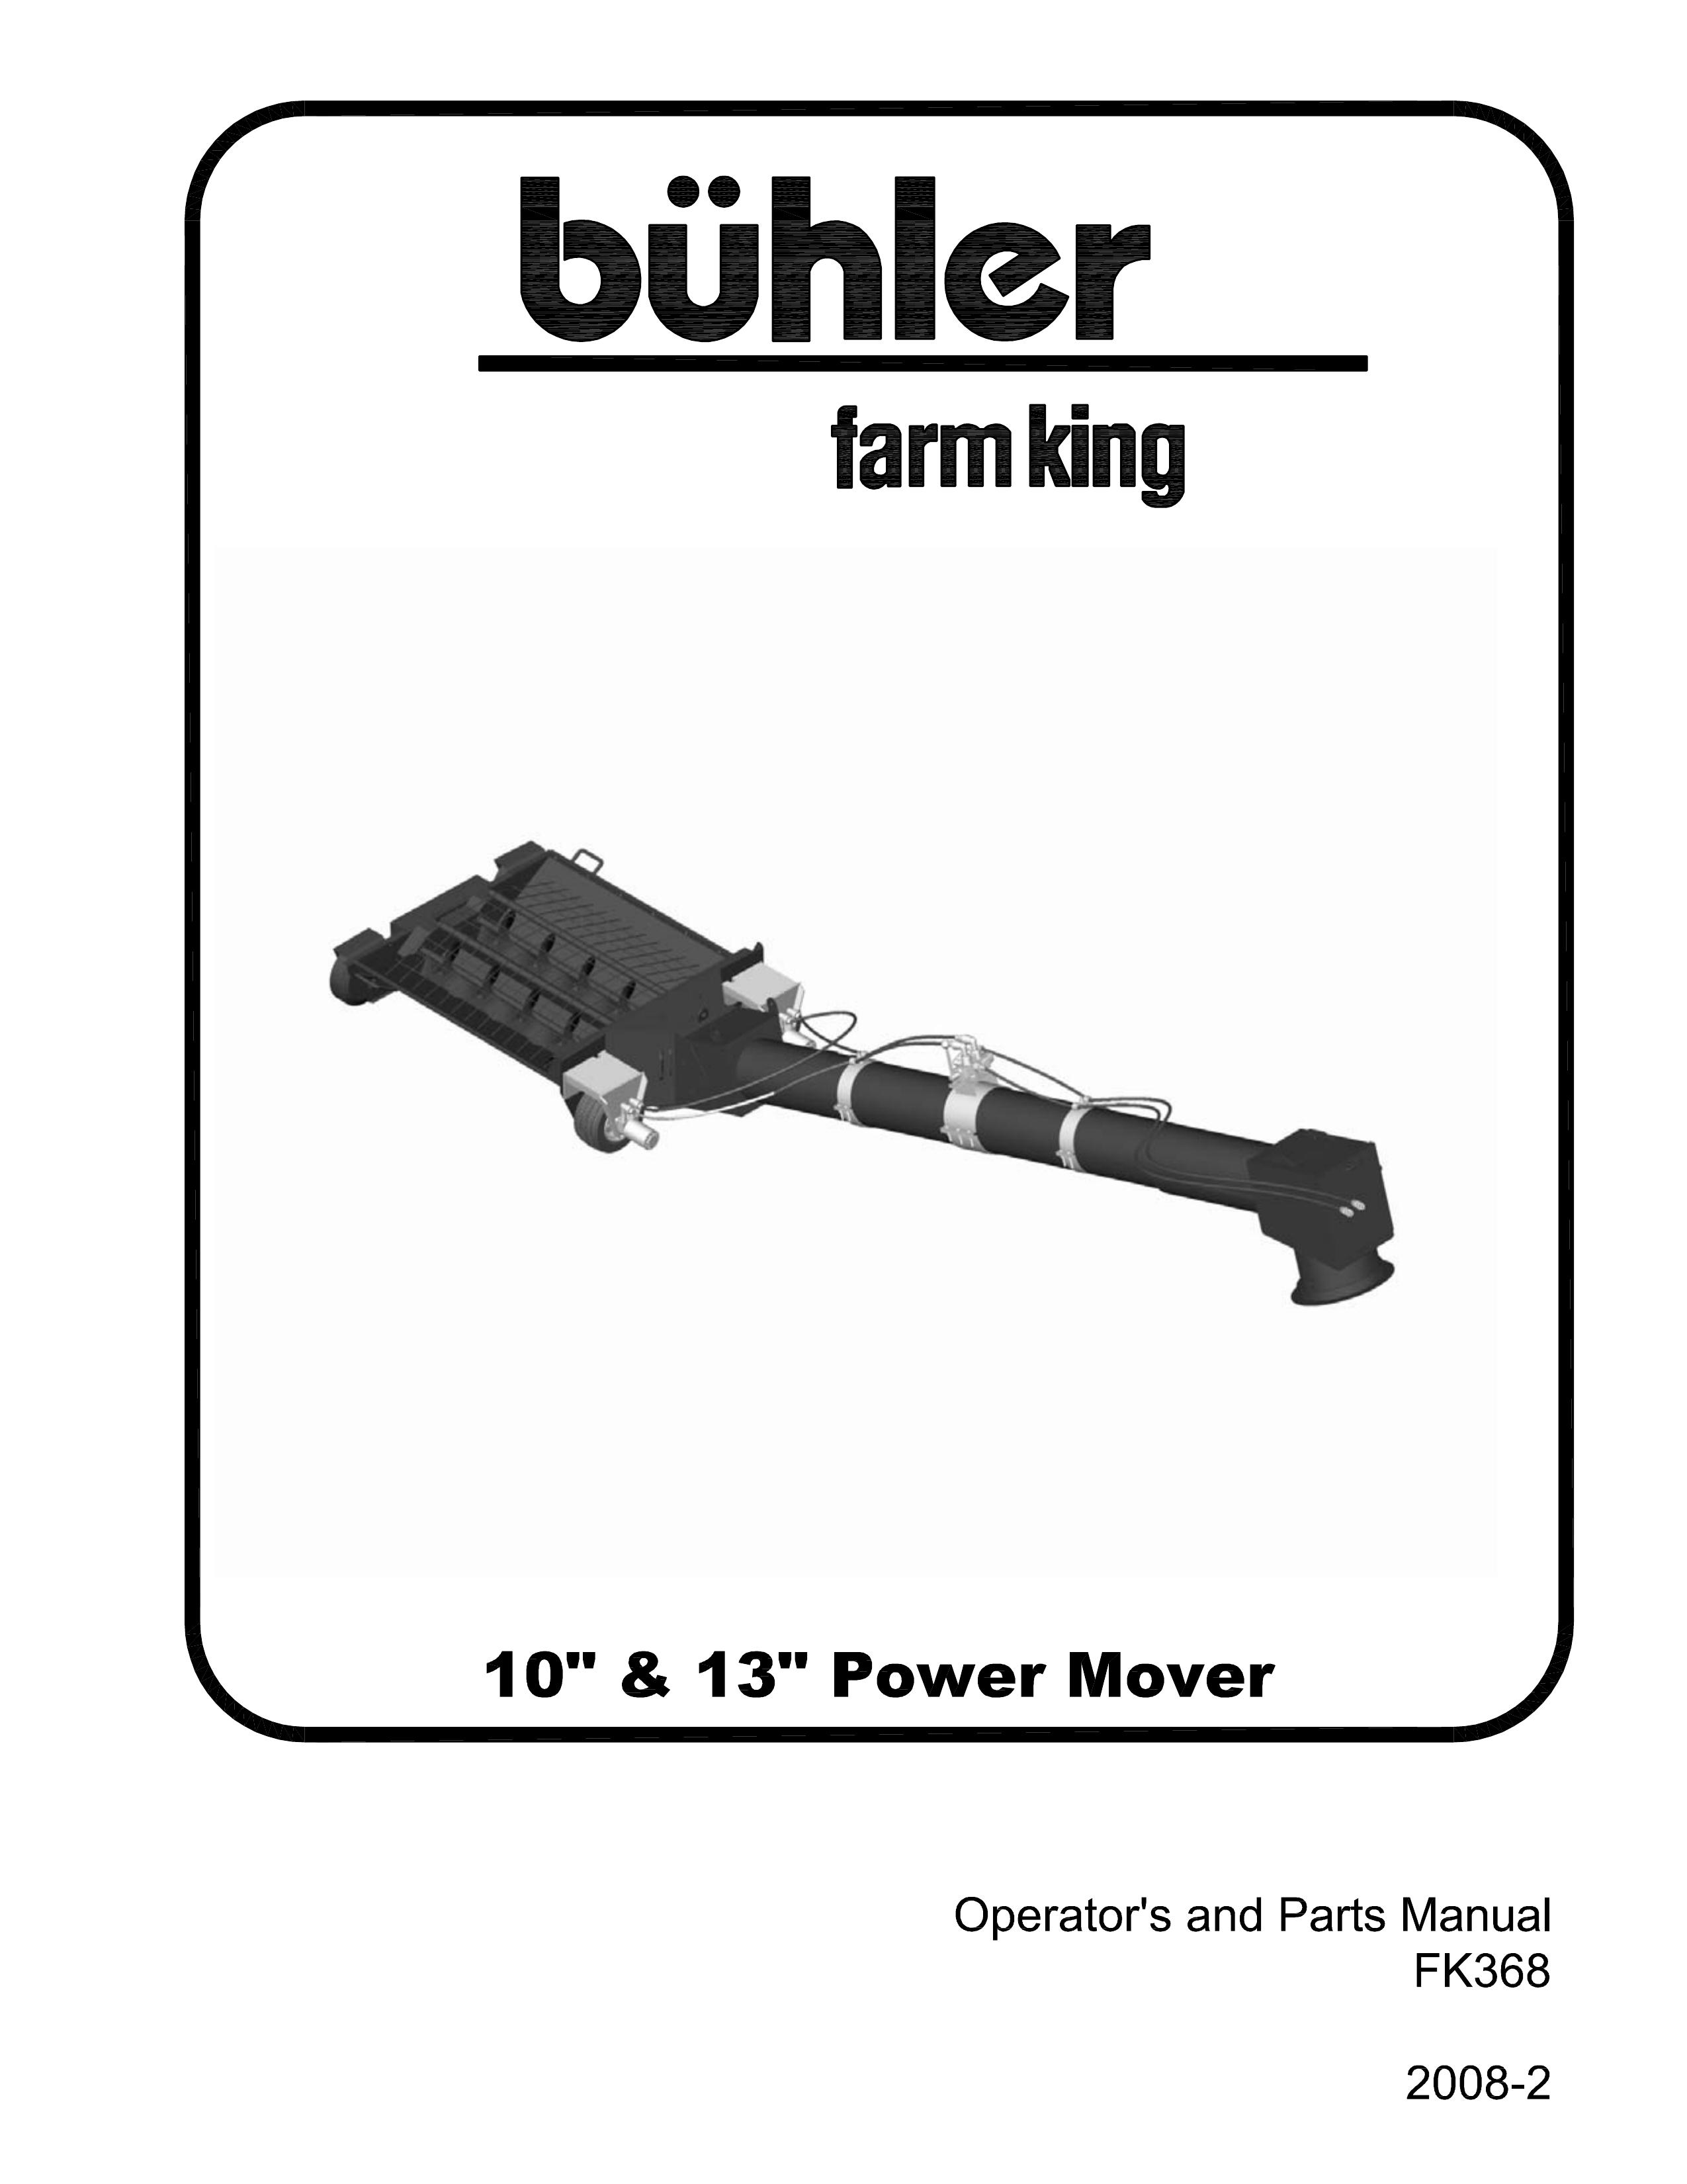 Buhler FK368 Lawn Mower User Manual